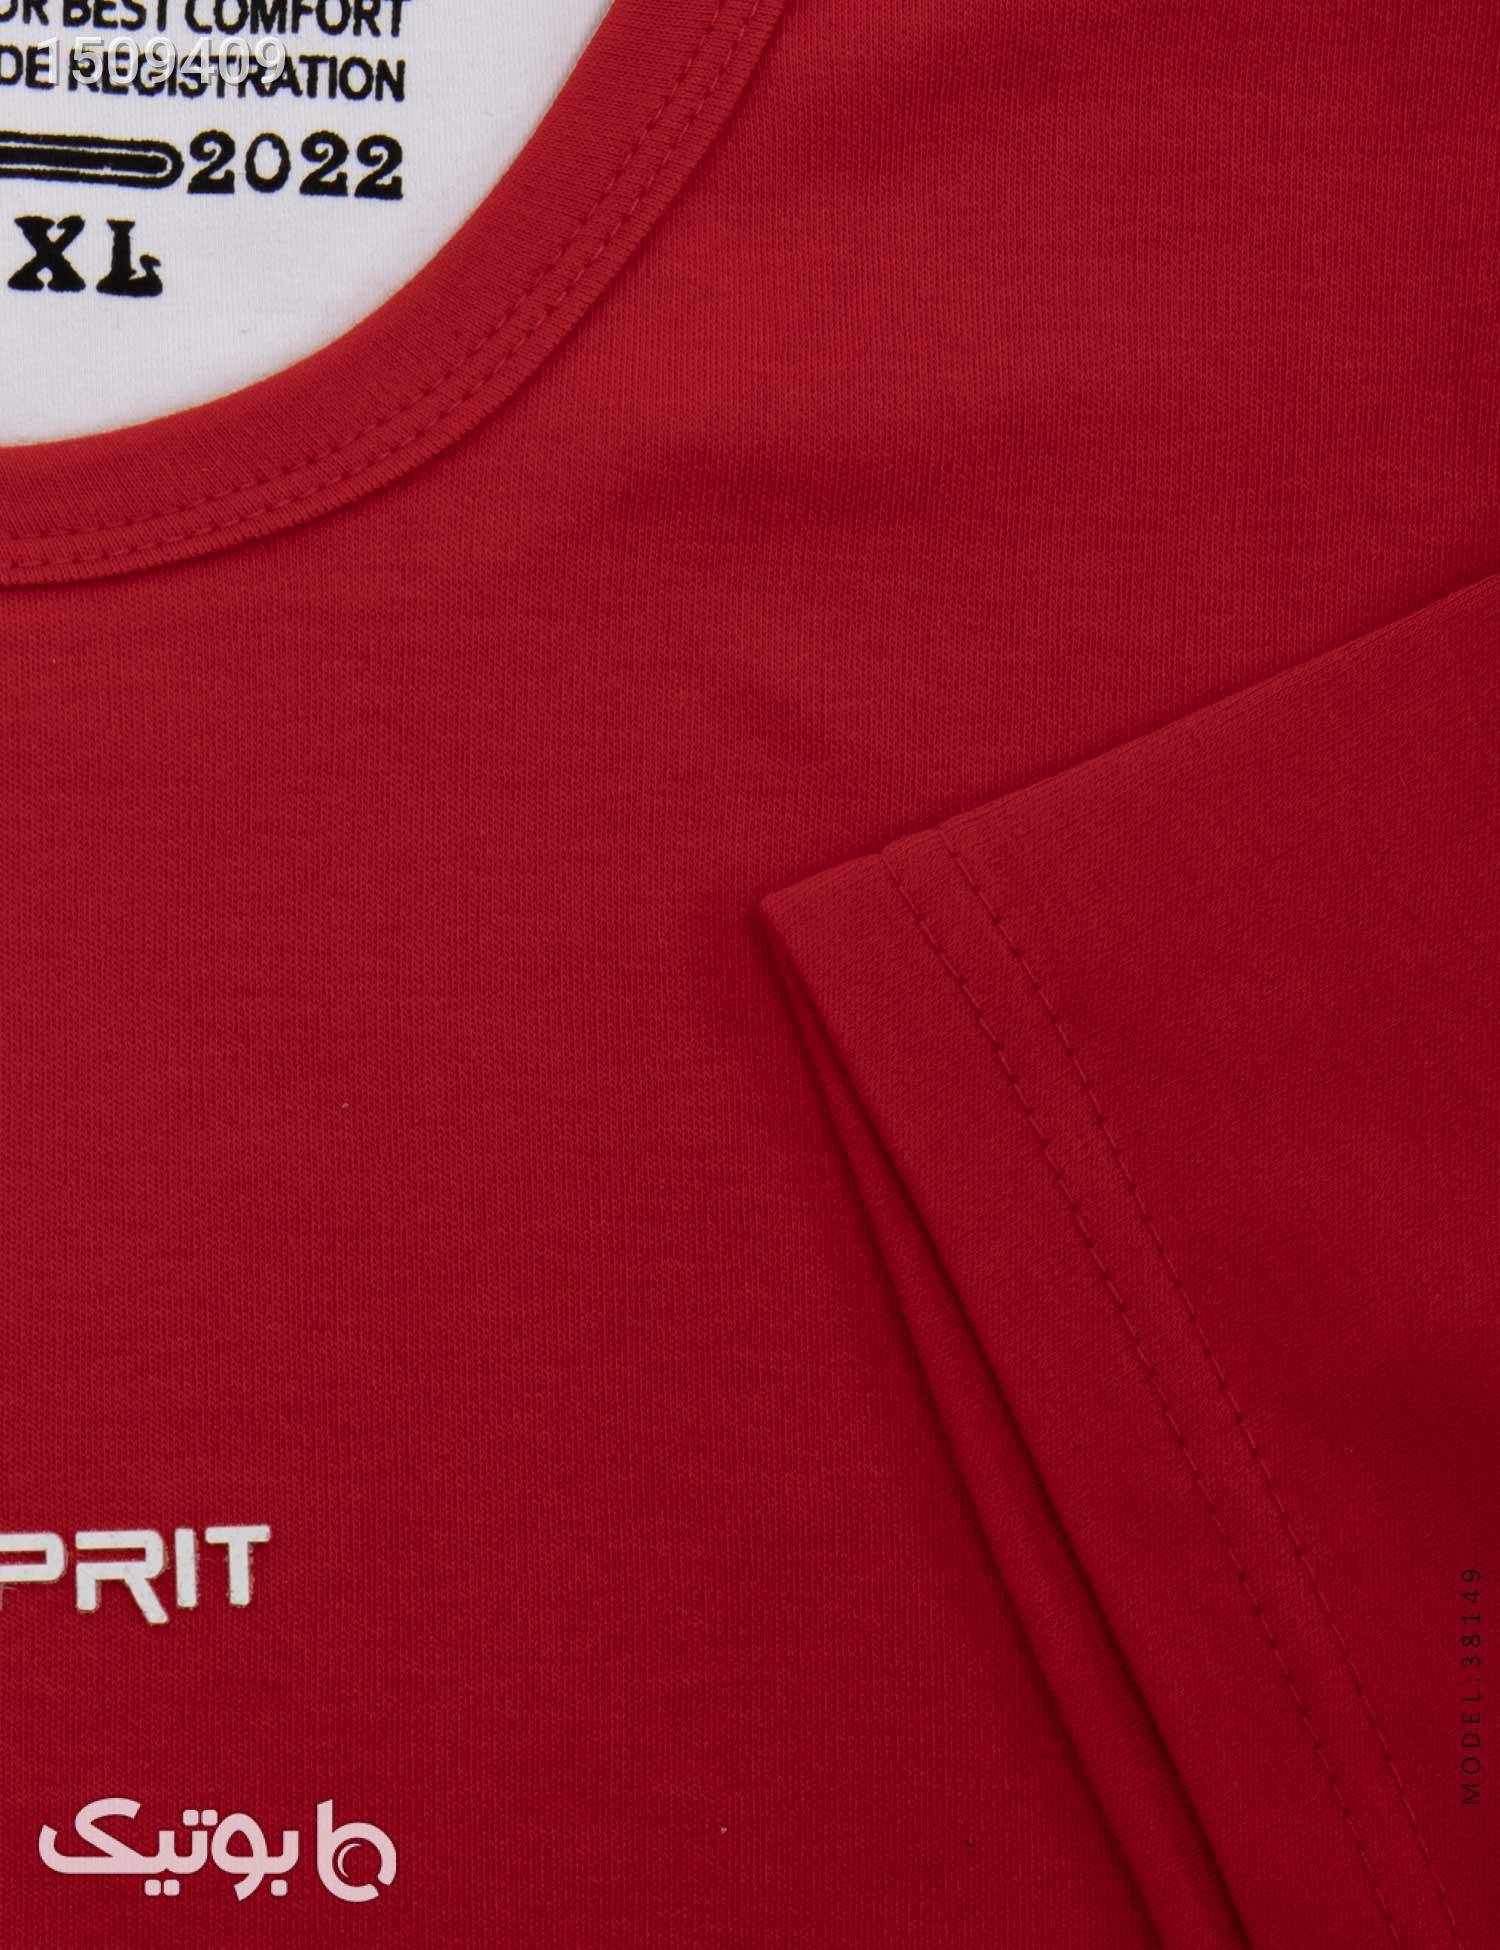 تیشرت مردانه یقه گرد Esprit مدل 38149 زرشکی تی شرت و پولو شرت مردانه